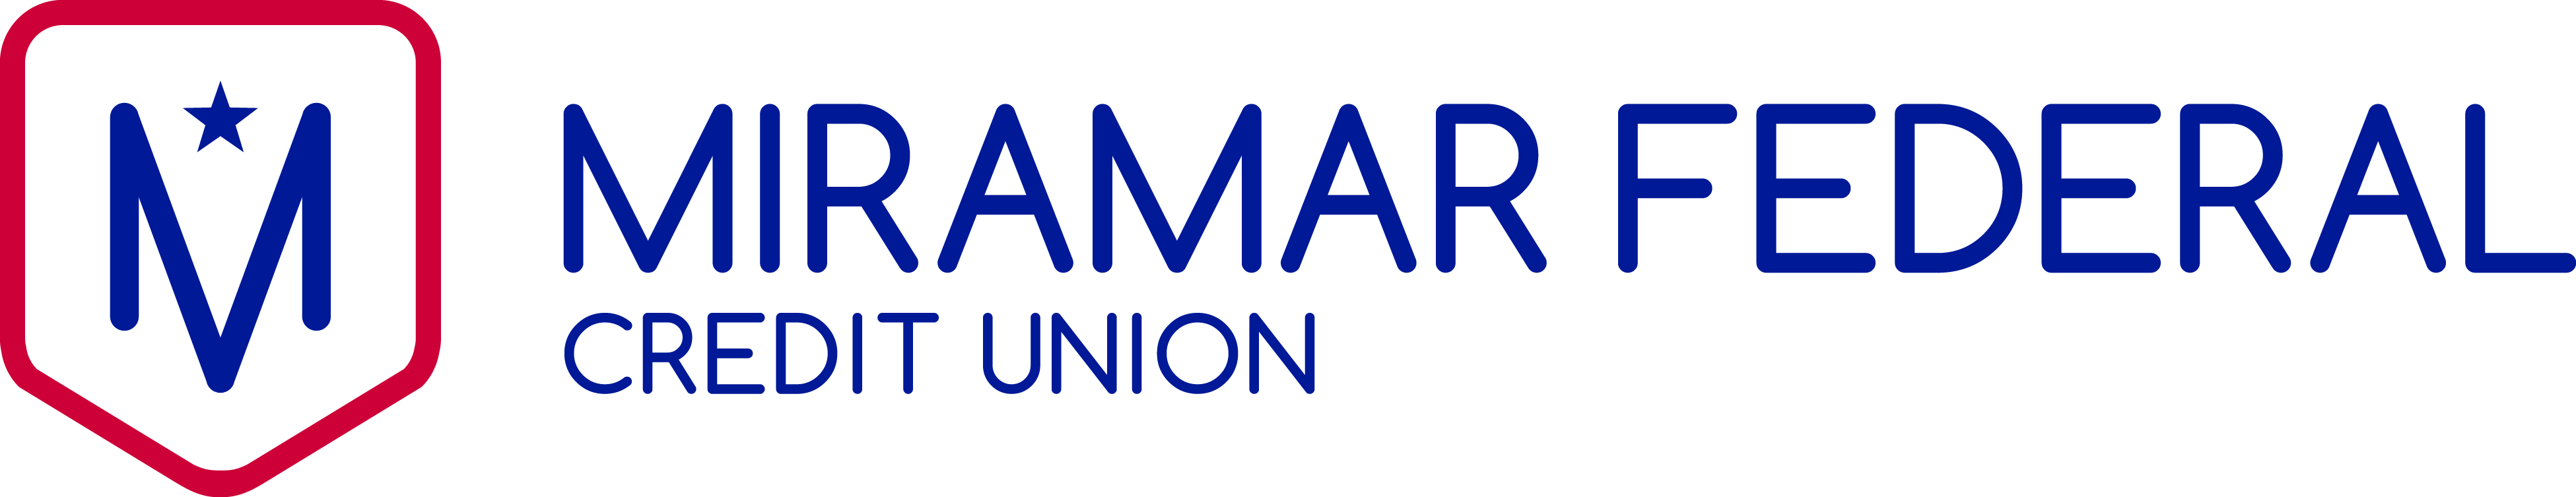 Miramar Federal Credit Union